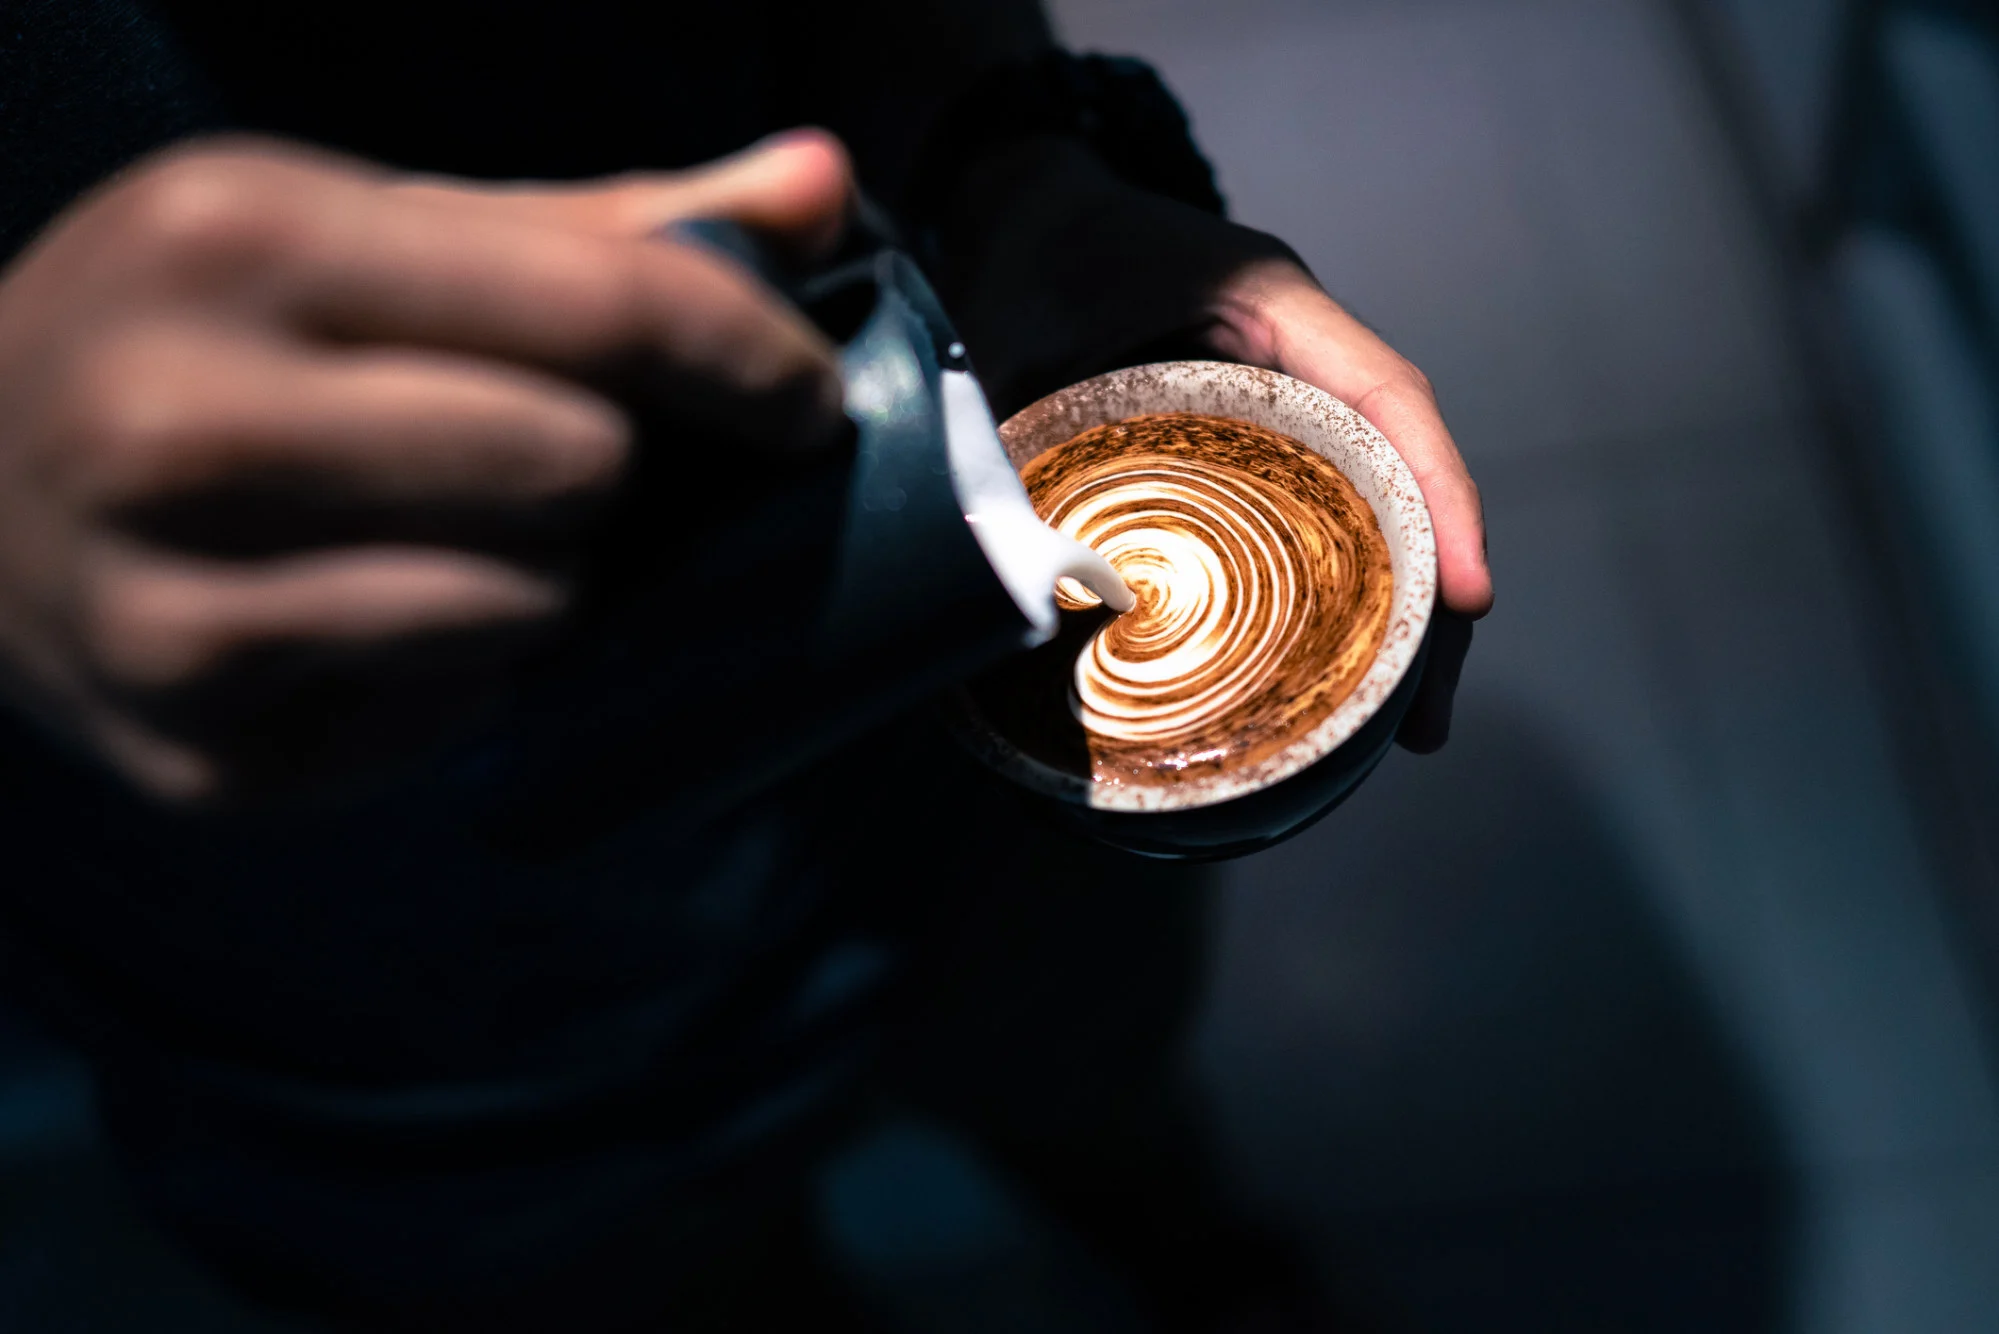 Cách thưởng thức cà phê lành mạnh nhất là uống cà phê trơn (đen) hoặc với sữa có nguồn gốc thực vật.